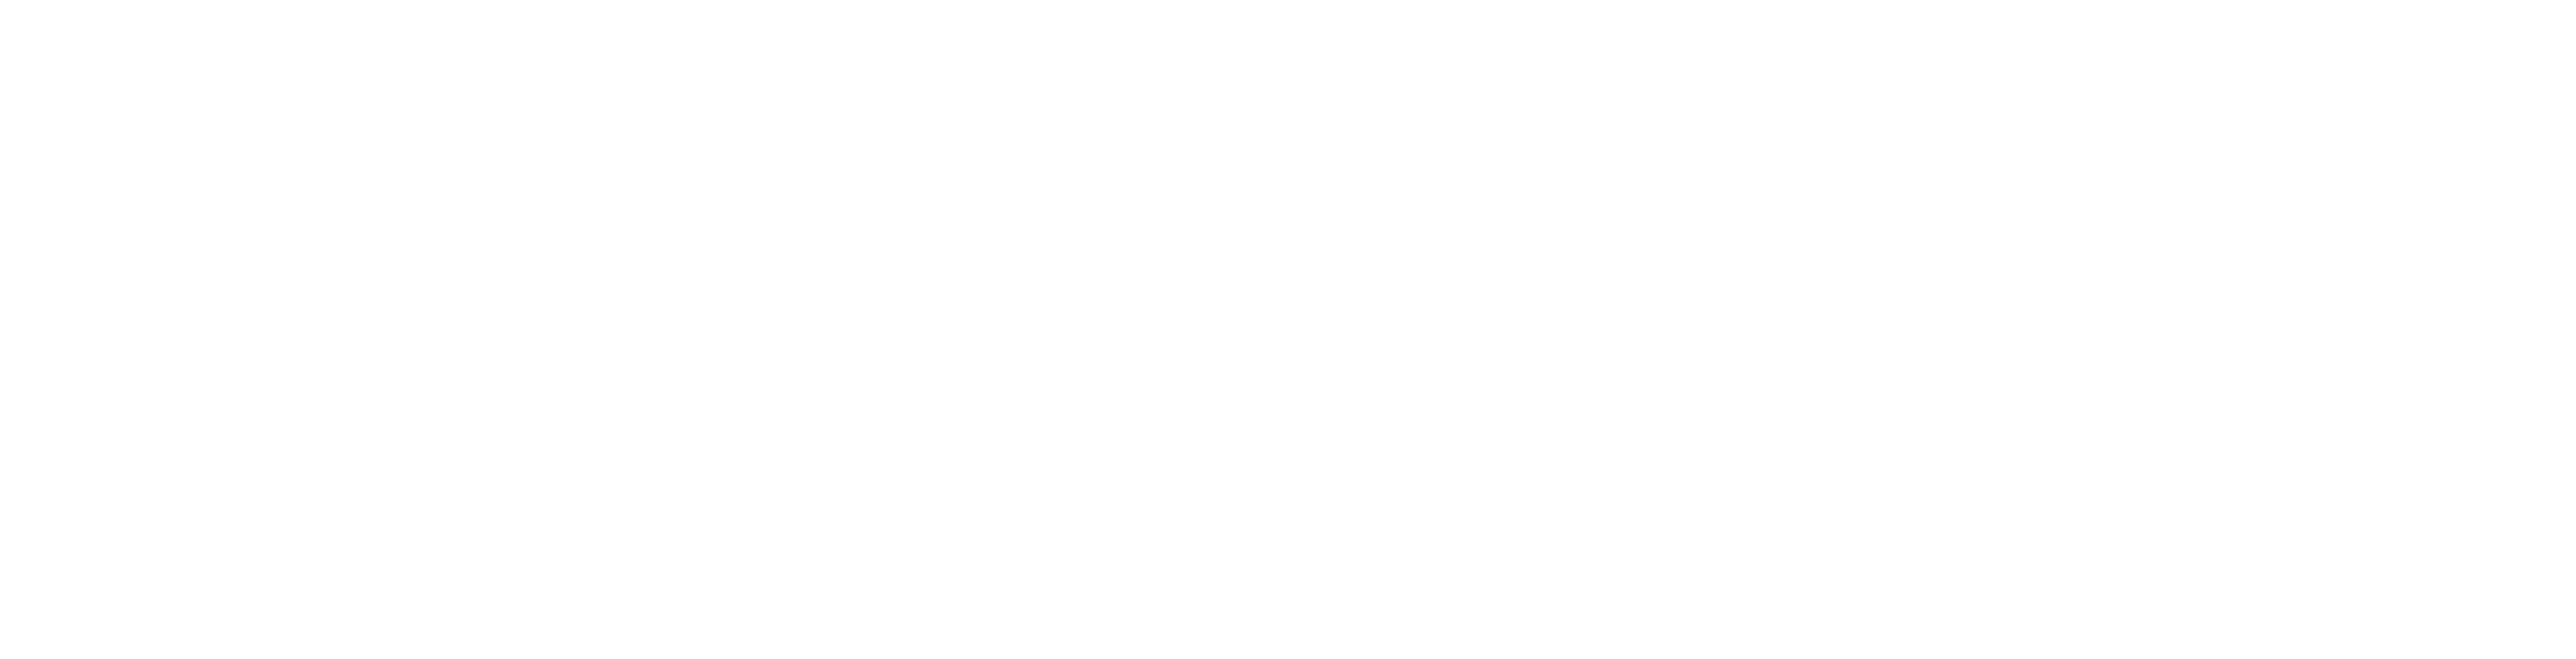 Zap Energy's logo